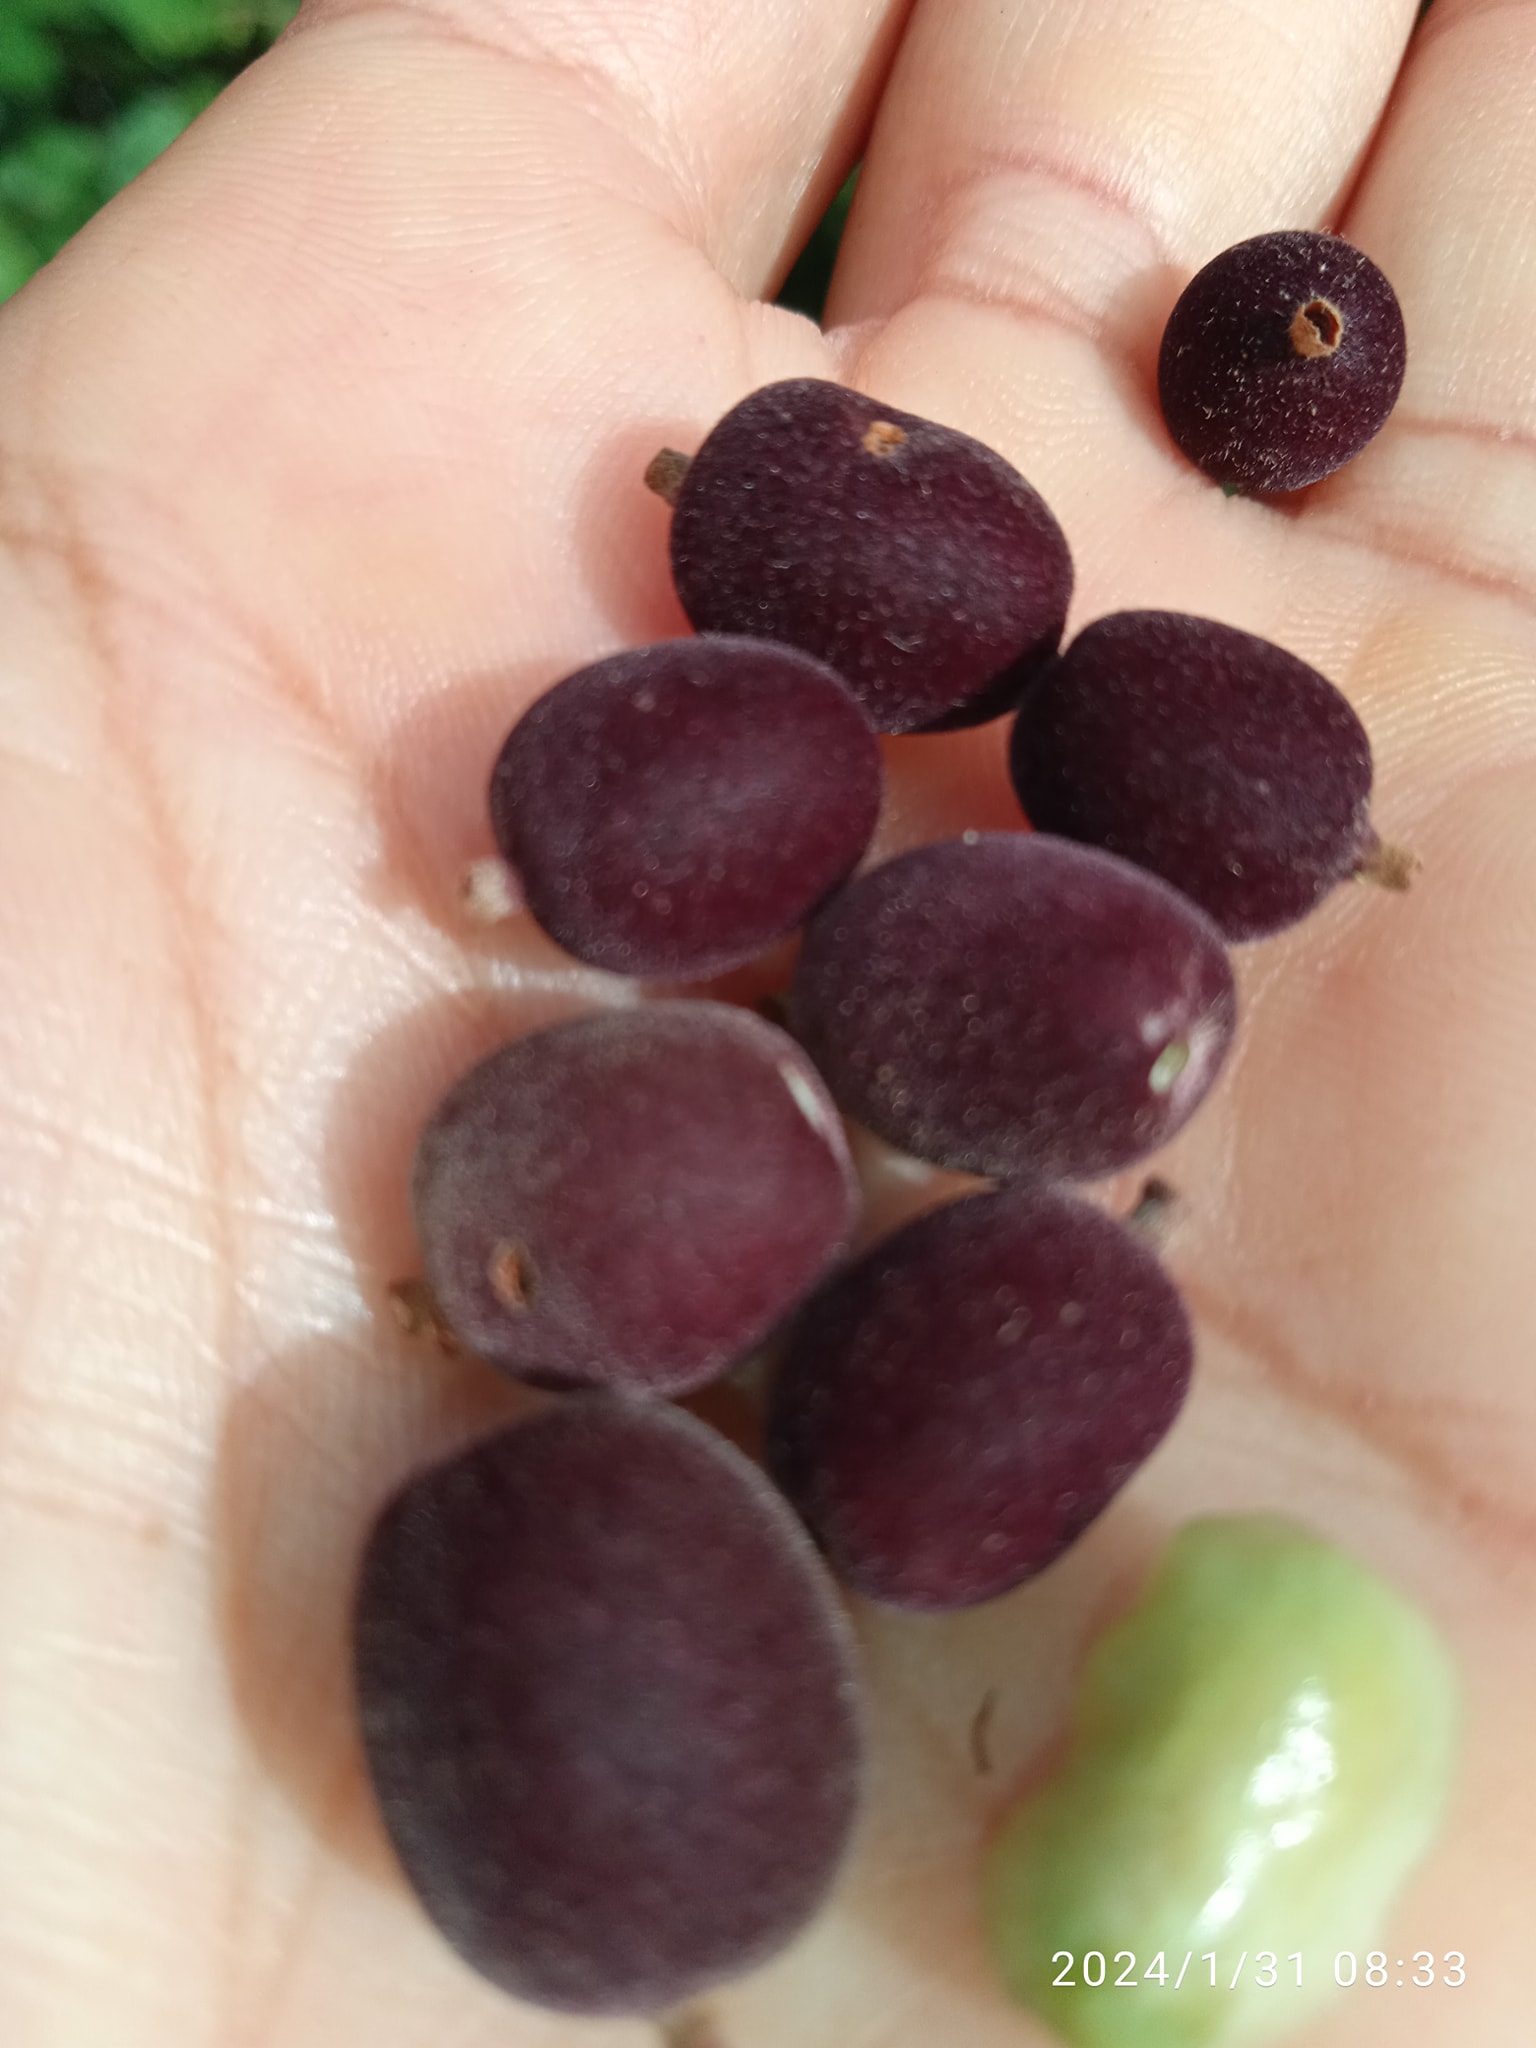 Guettarda uruguayensis - Veludinho- 1 fresh seed / 1 frischer Samen